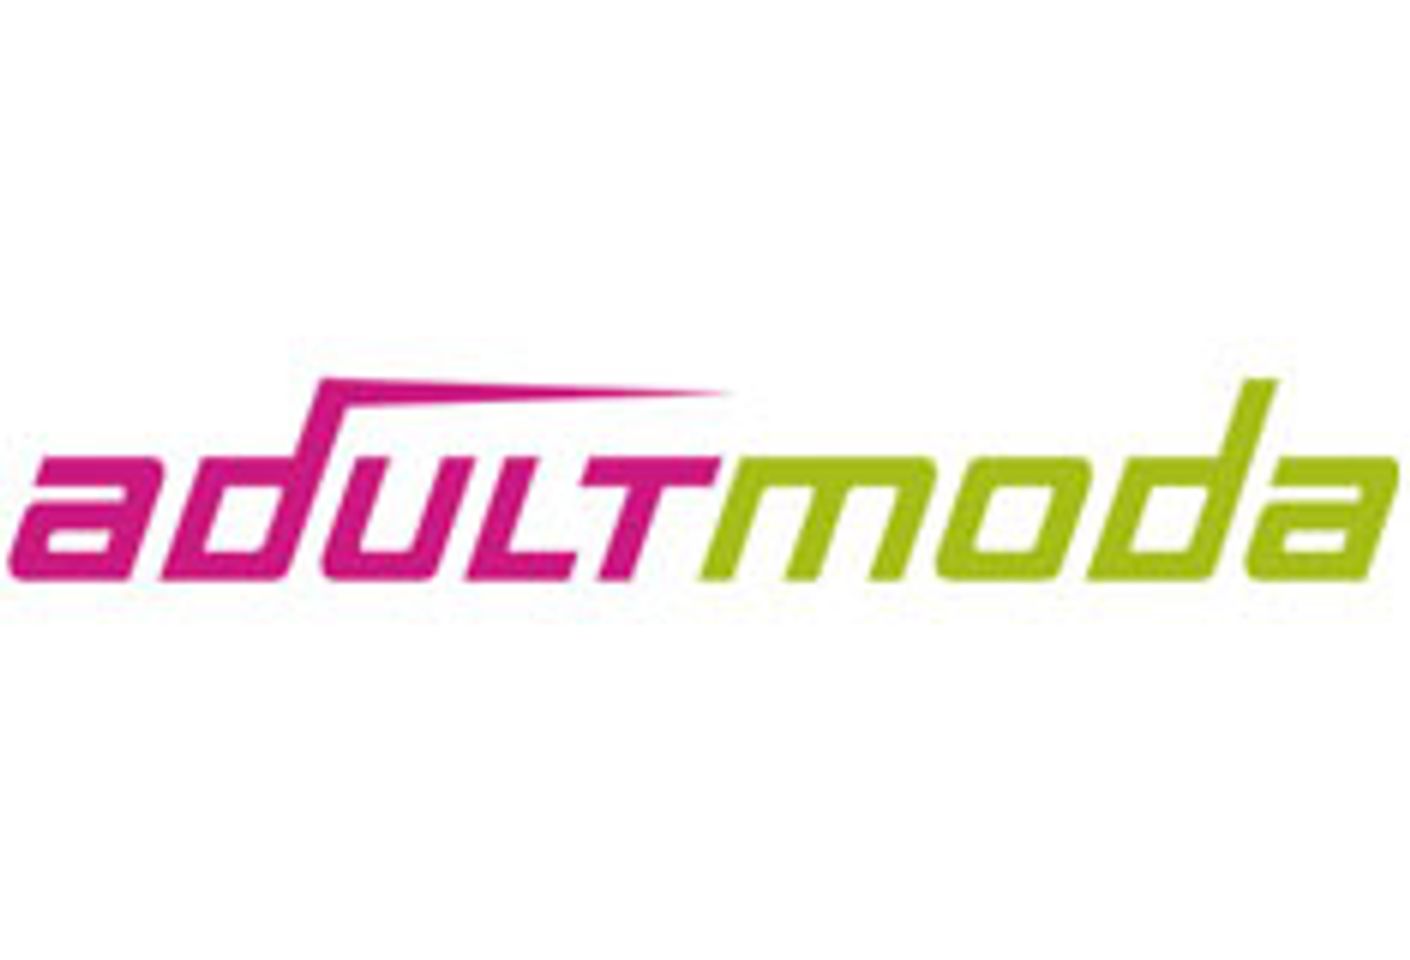 Adultmoda Opens U.S. Office